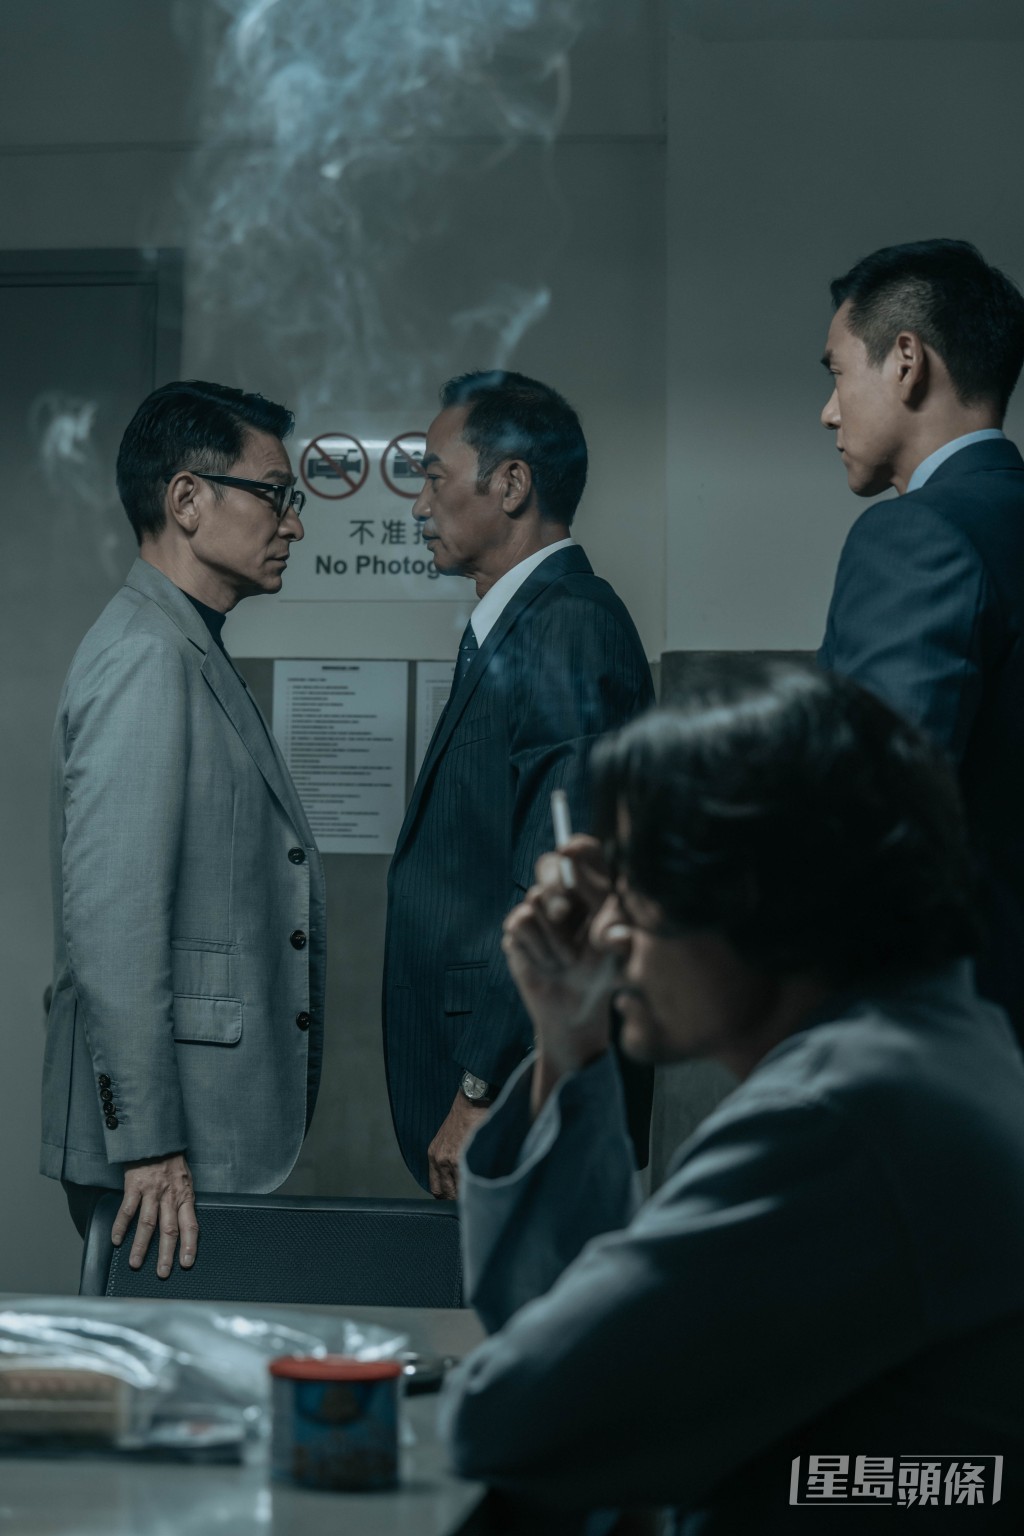 劉德華、林家棟、劉雅瑟等主演犯罪動作電影《潛行》將於1月11日上映。